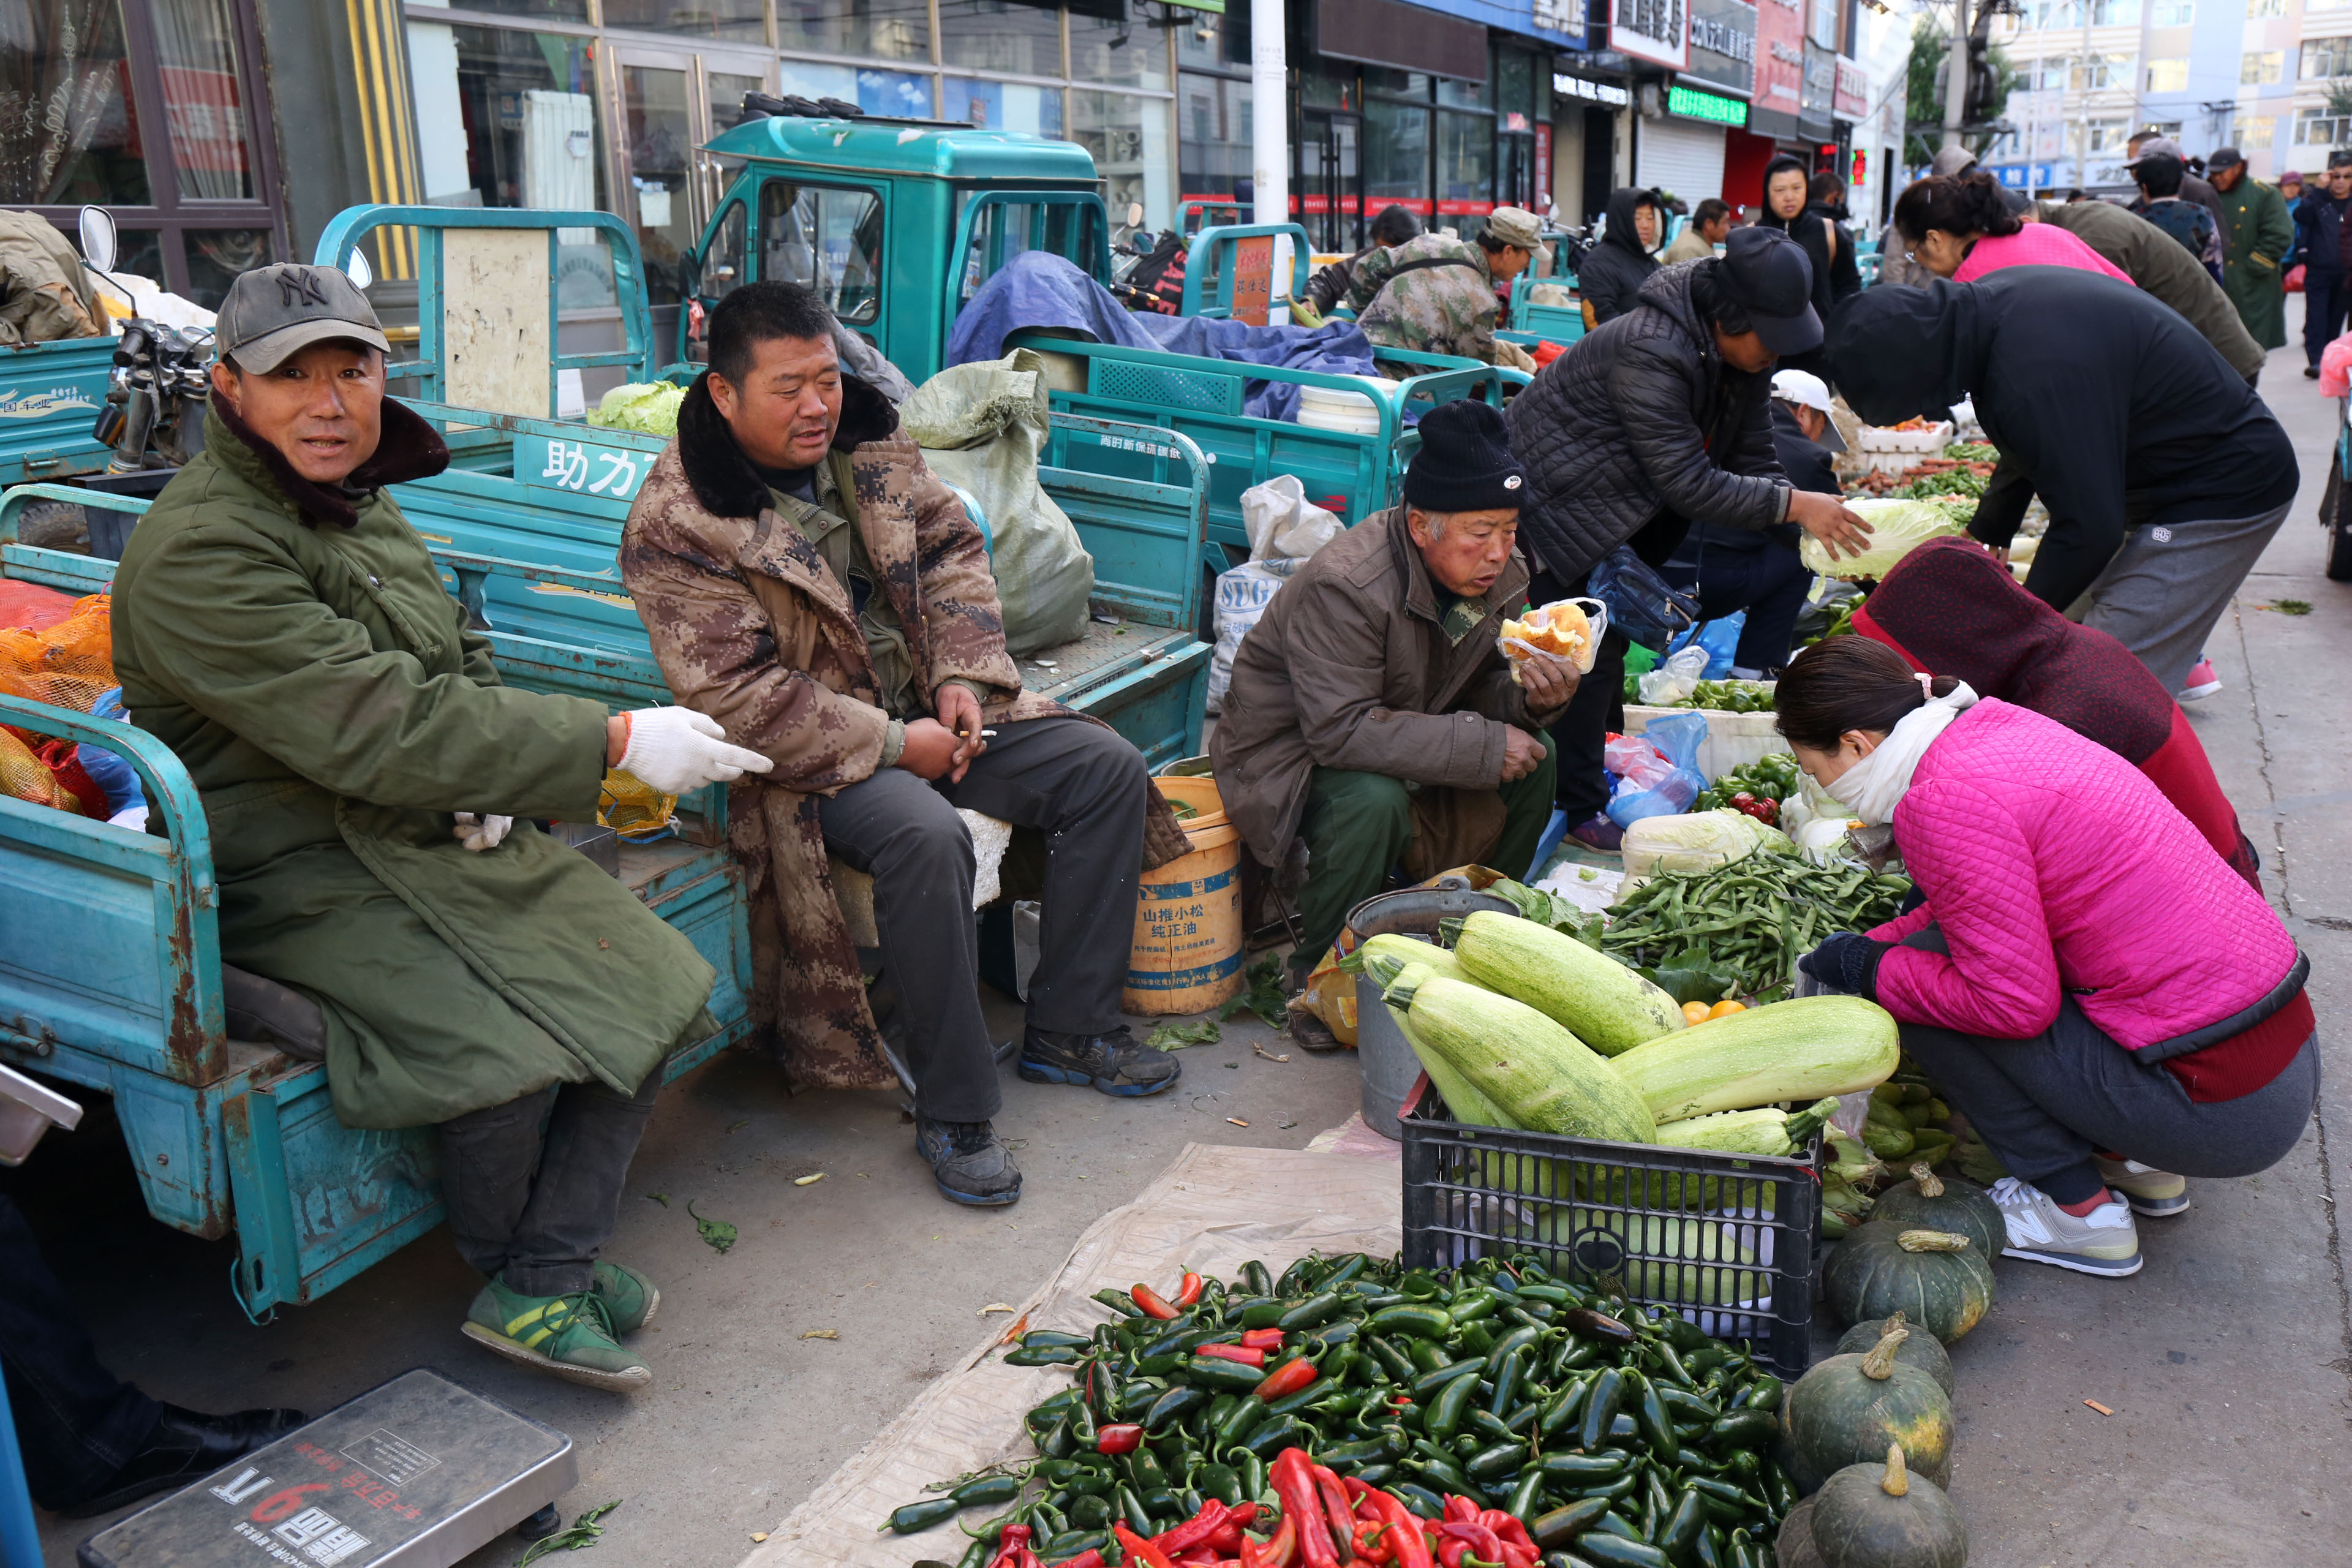 早晨7点左右,在黑河市大早市上,无论是卖菜的菜农菜贩,还是买菜的居民